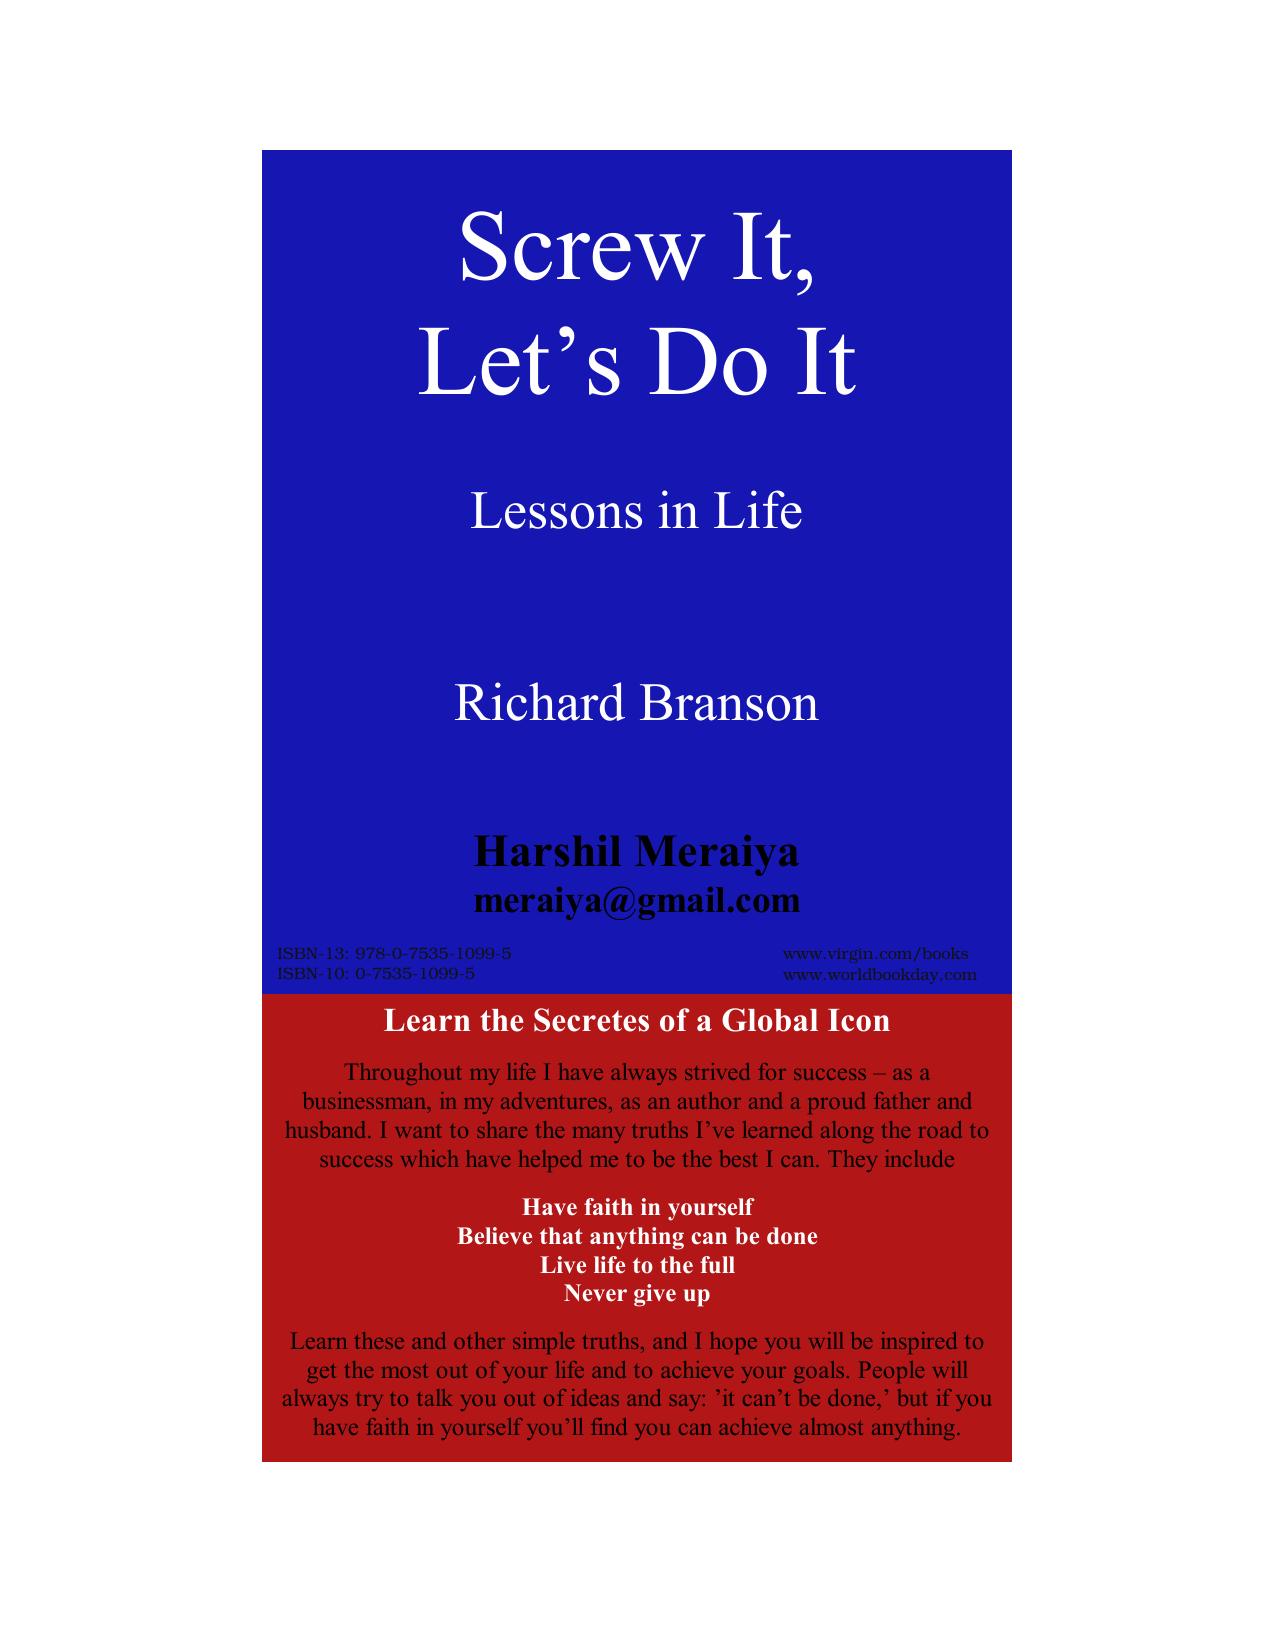 Richard Branson - Screw it, Let's Do It